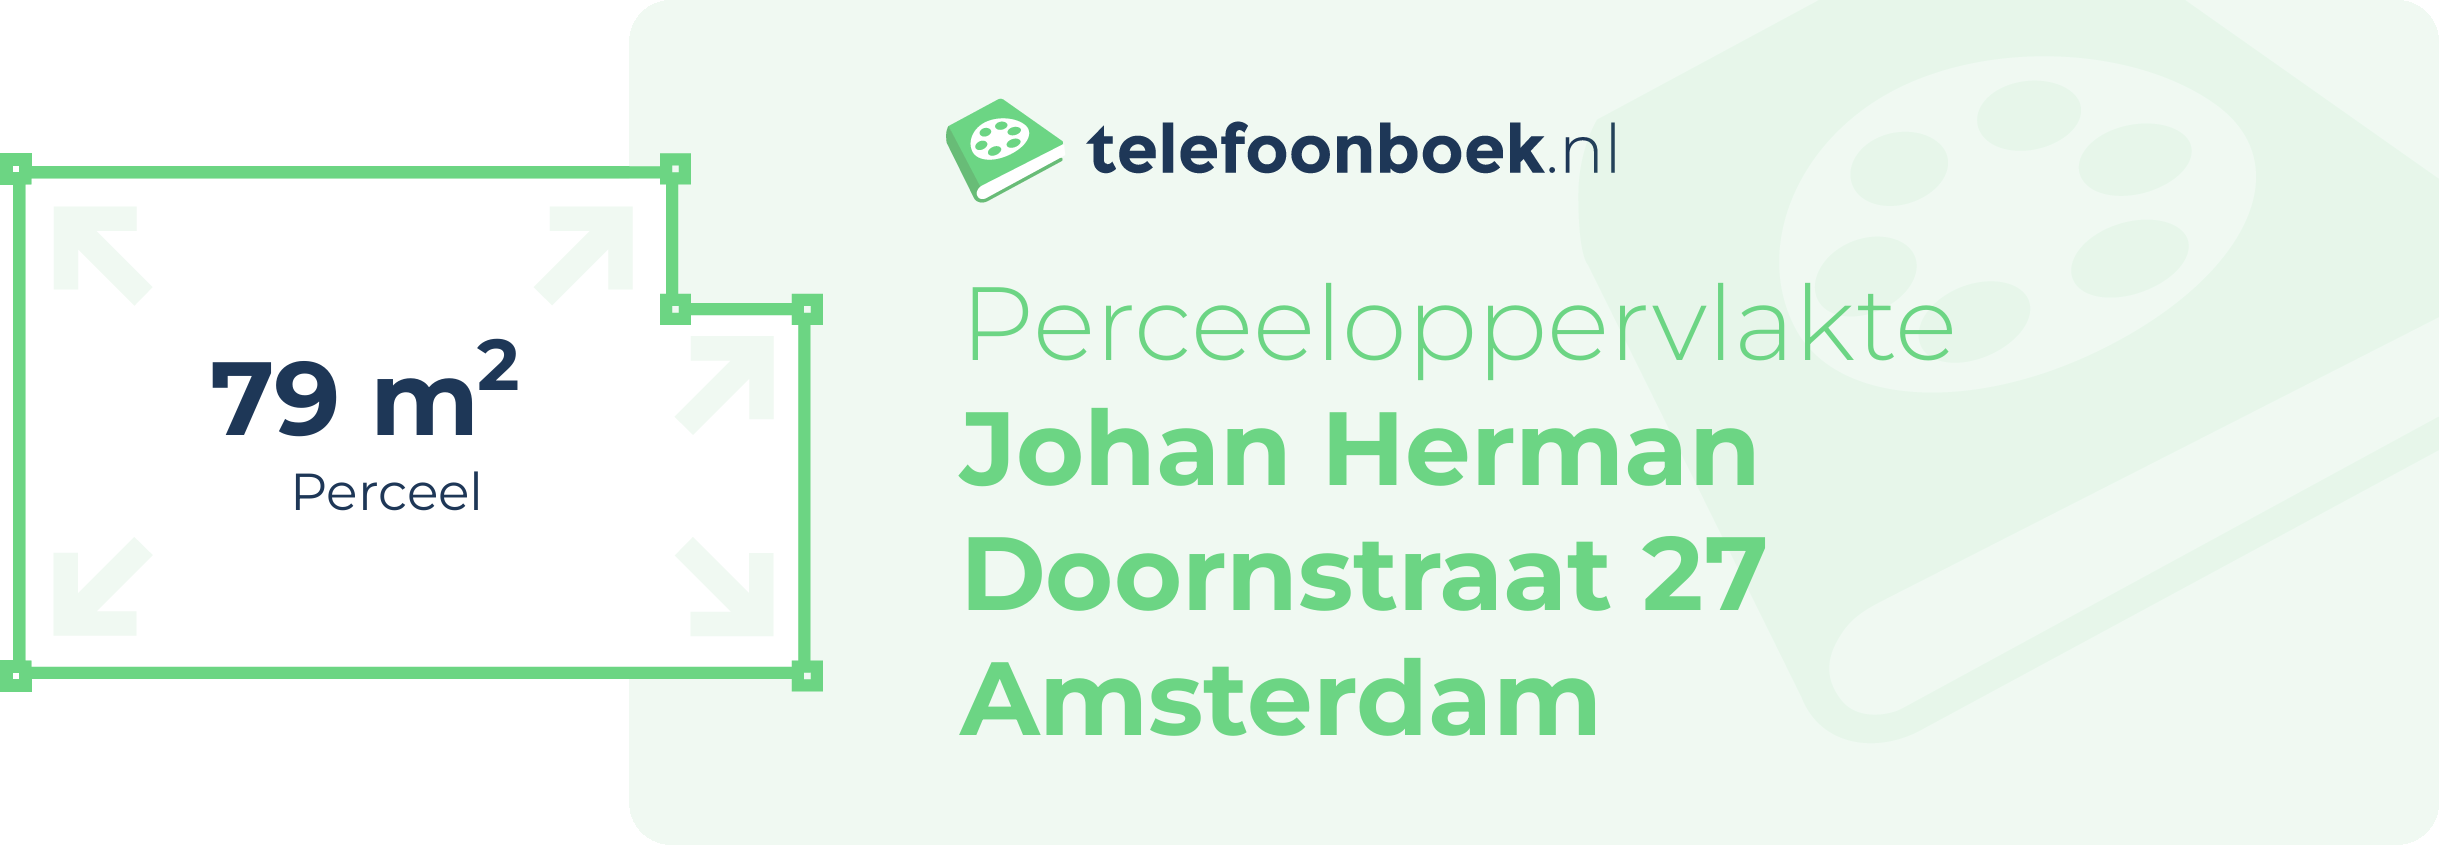 Perceeloppervlakte Johan Herman Doornstraat 27 Amsterdam